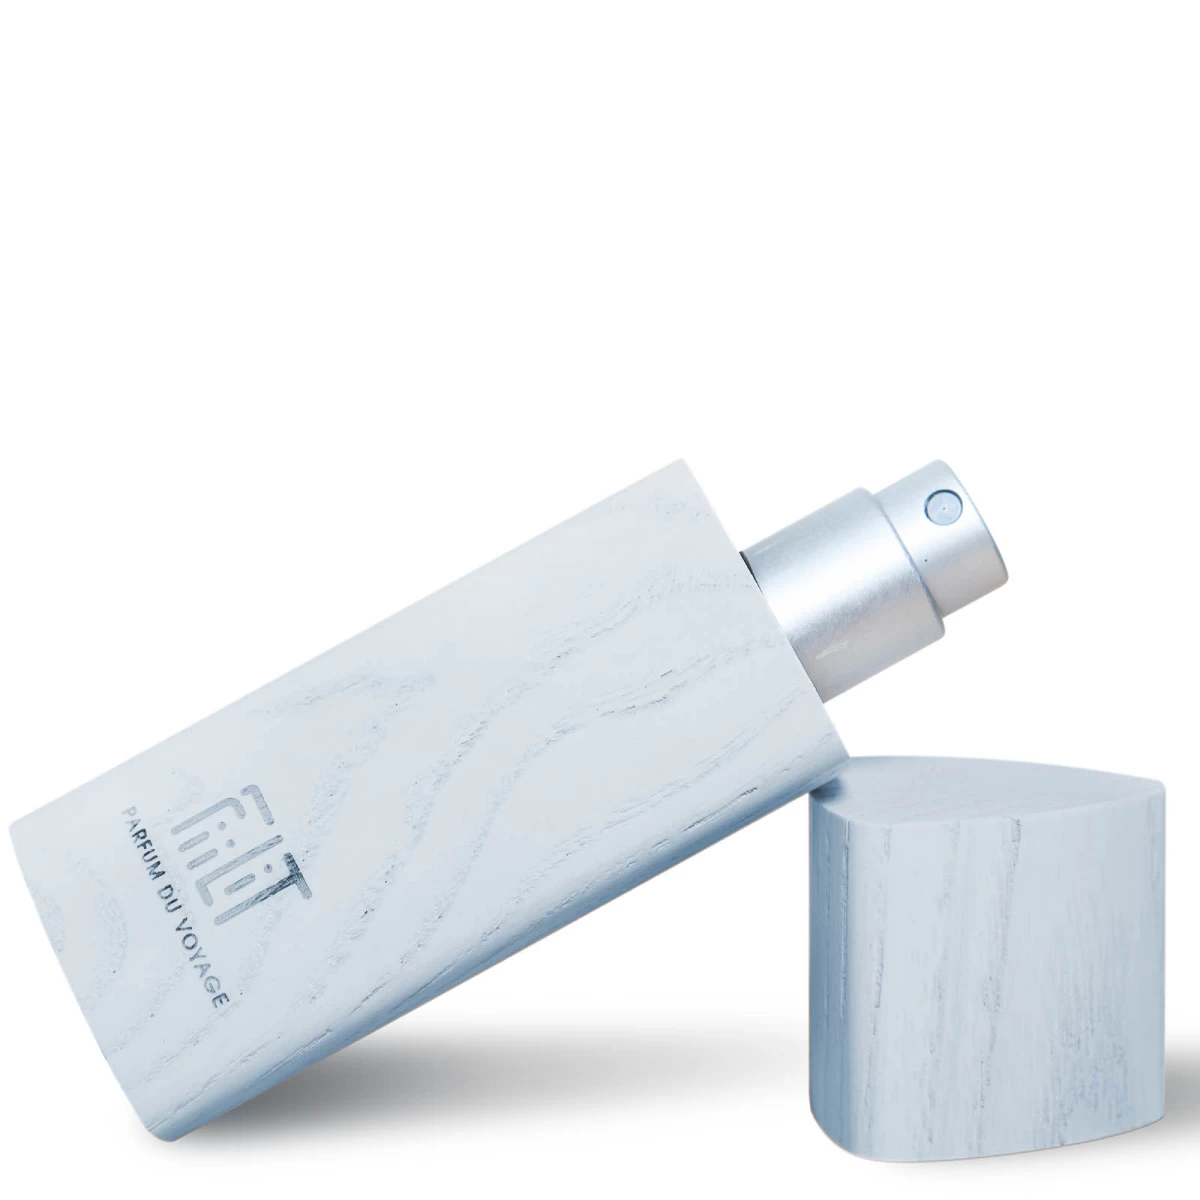 detailed_11_eau-de-parfum-ice-boreal-woodencase-11ml-fiilit-parfum-du-voyage-1.webp